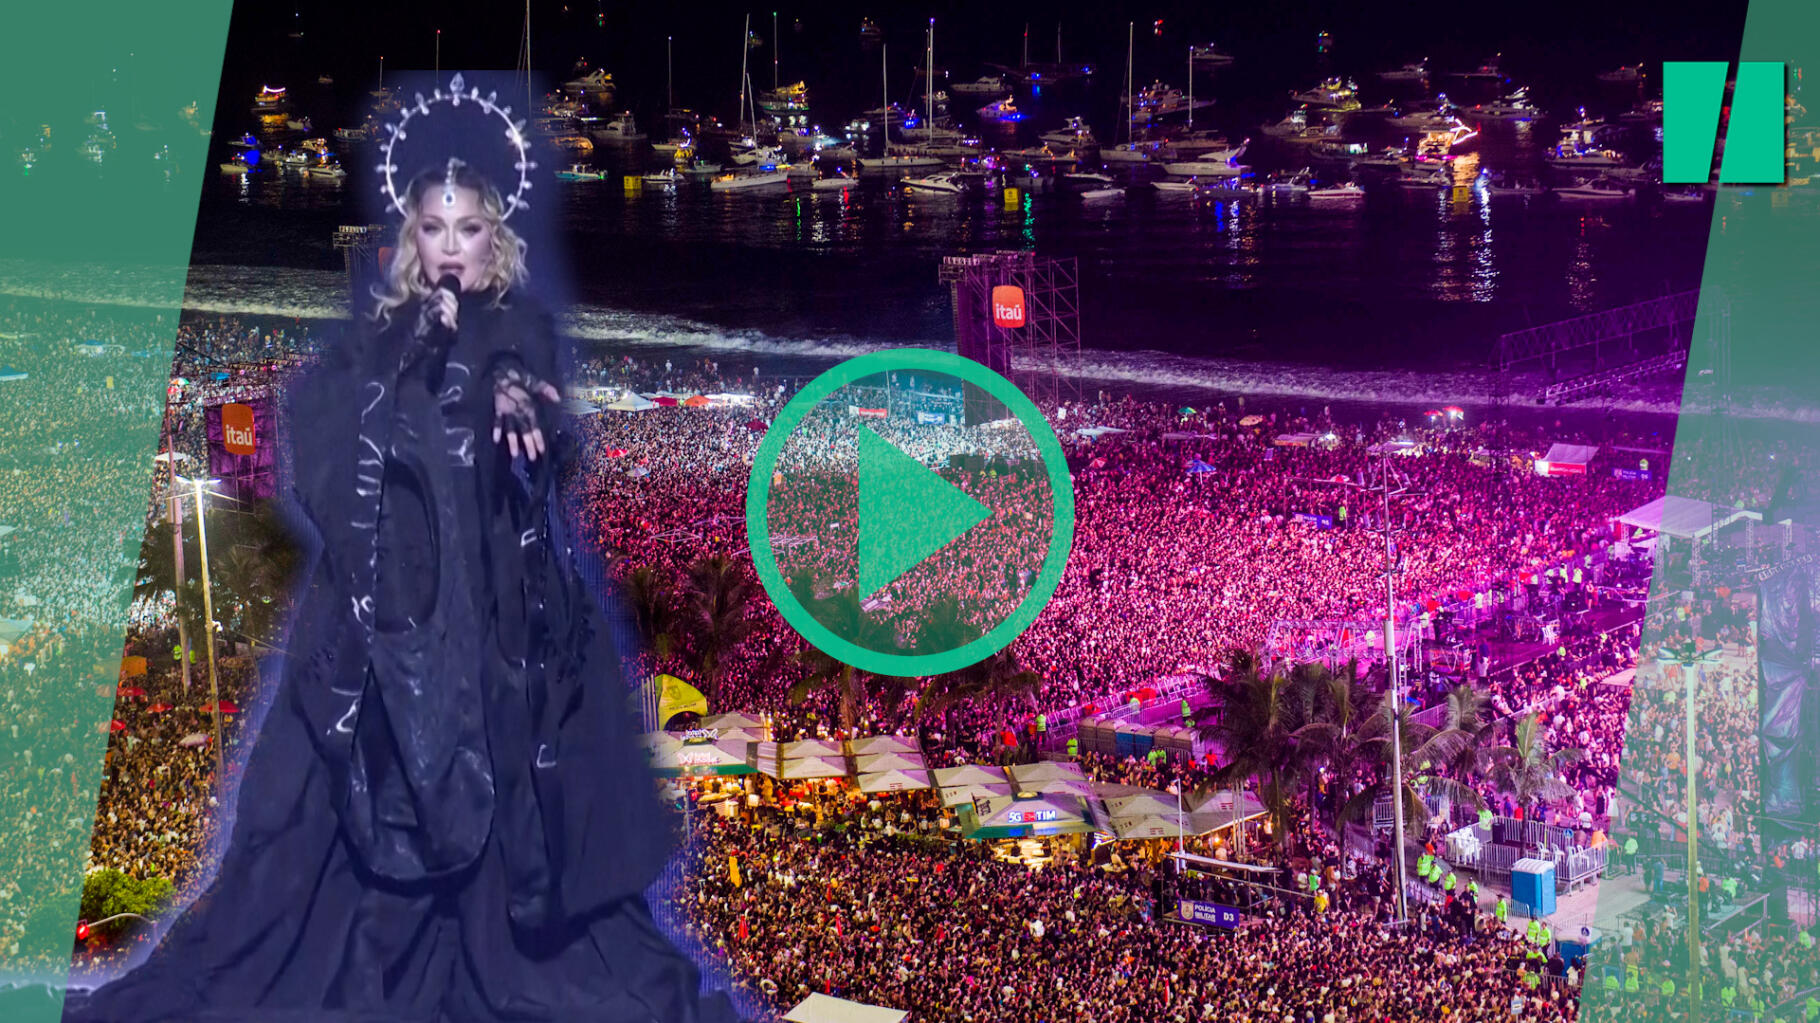 Madonna interprète “Like a Virgin” en concert à Rio de Janeiro devant 1,5 million de personnes